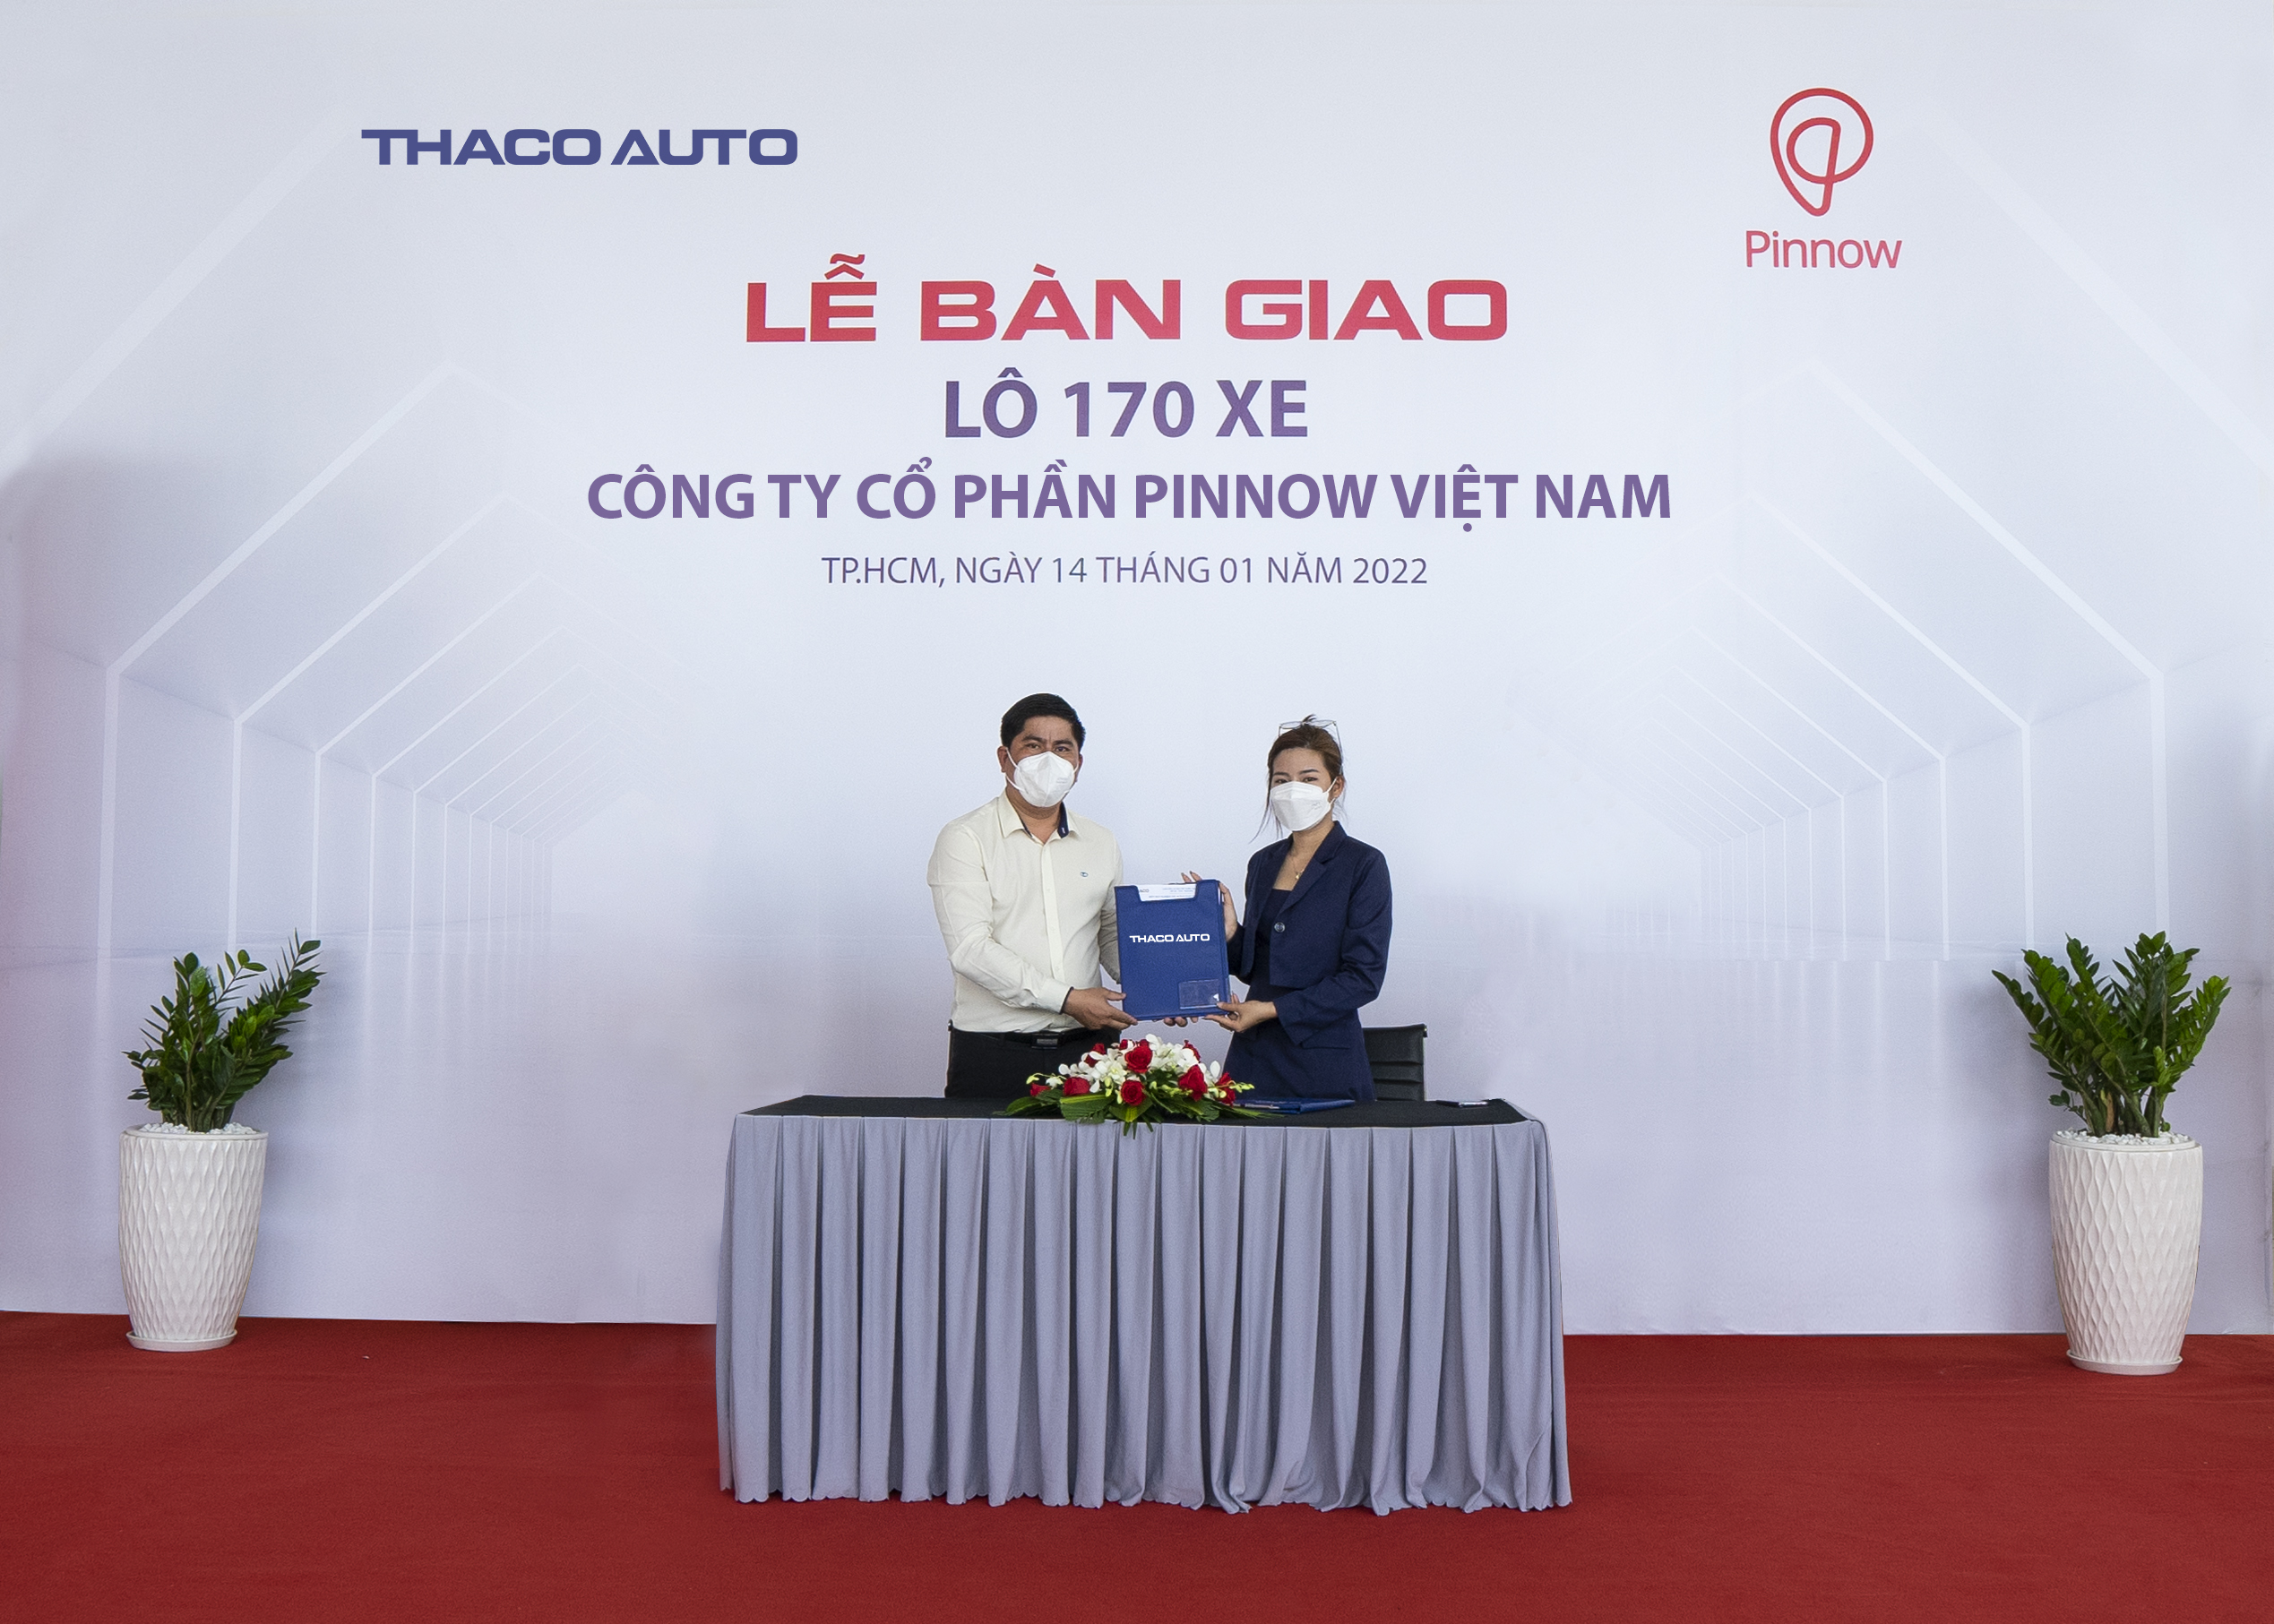 THACO AUTO bàn giao lô 170 xe cho công ty PINNOW Việt Nam - Ảnh 1.